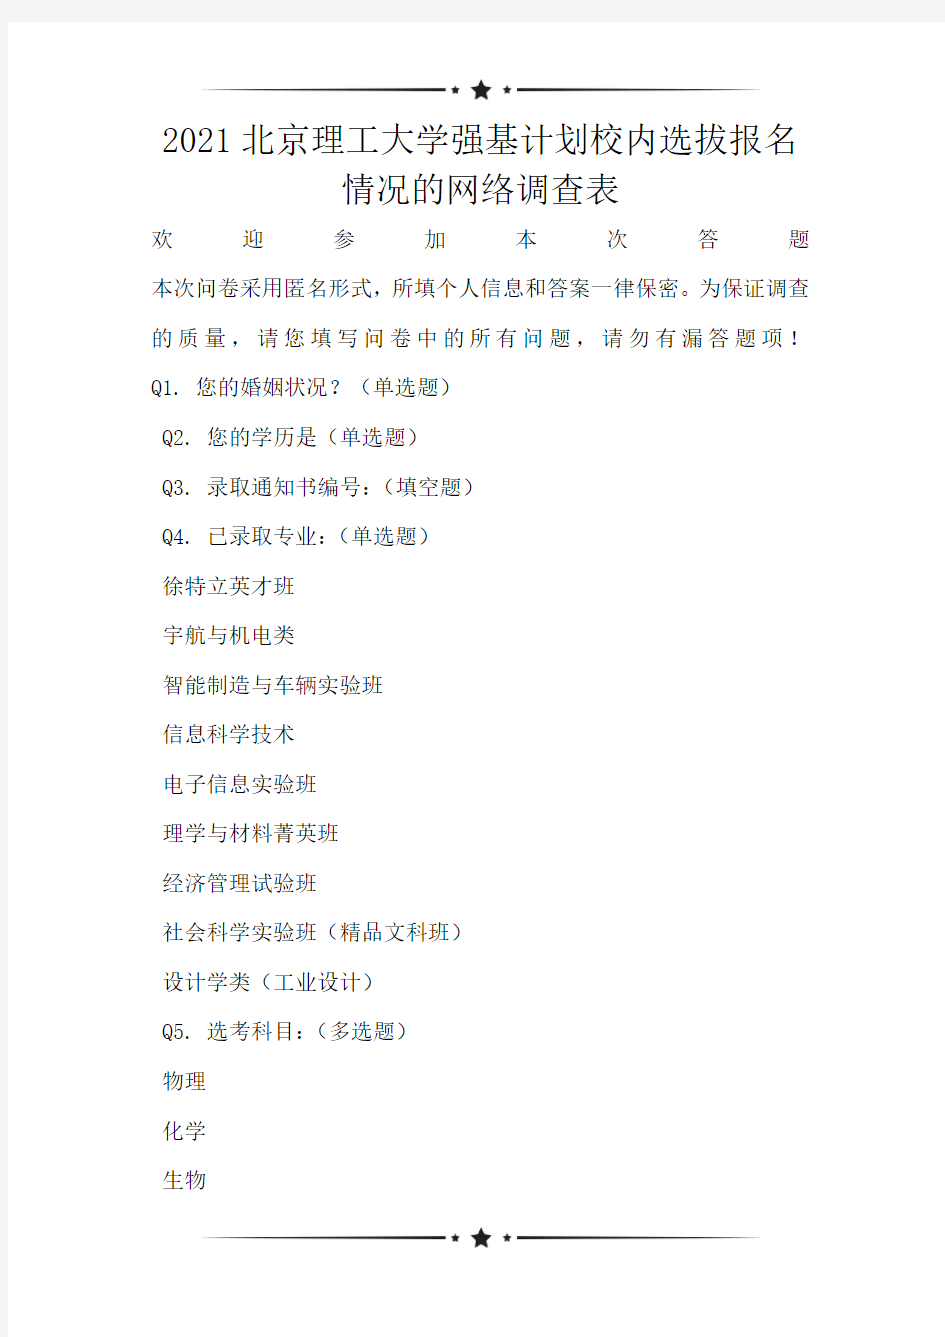 2021北京理工大学强基计划校内选拔报名情况的网络调查表